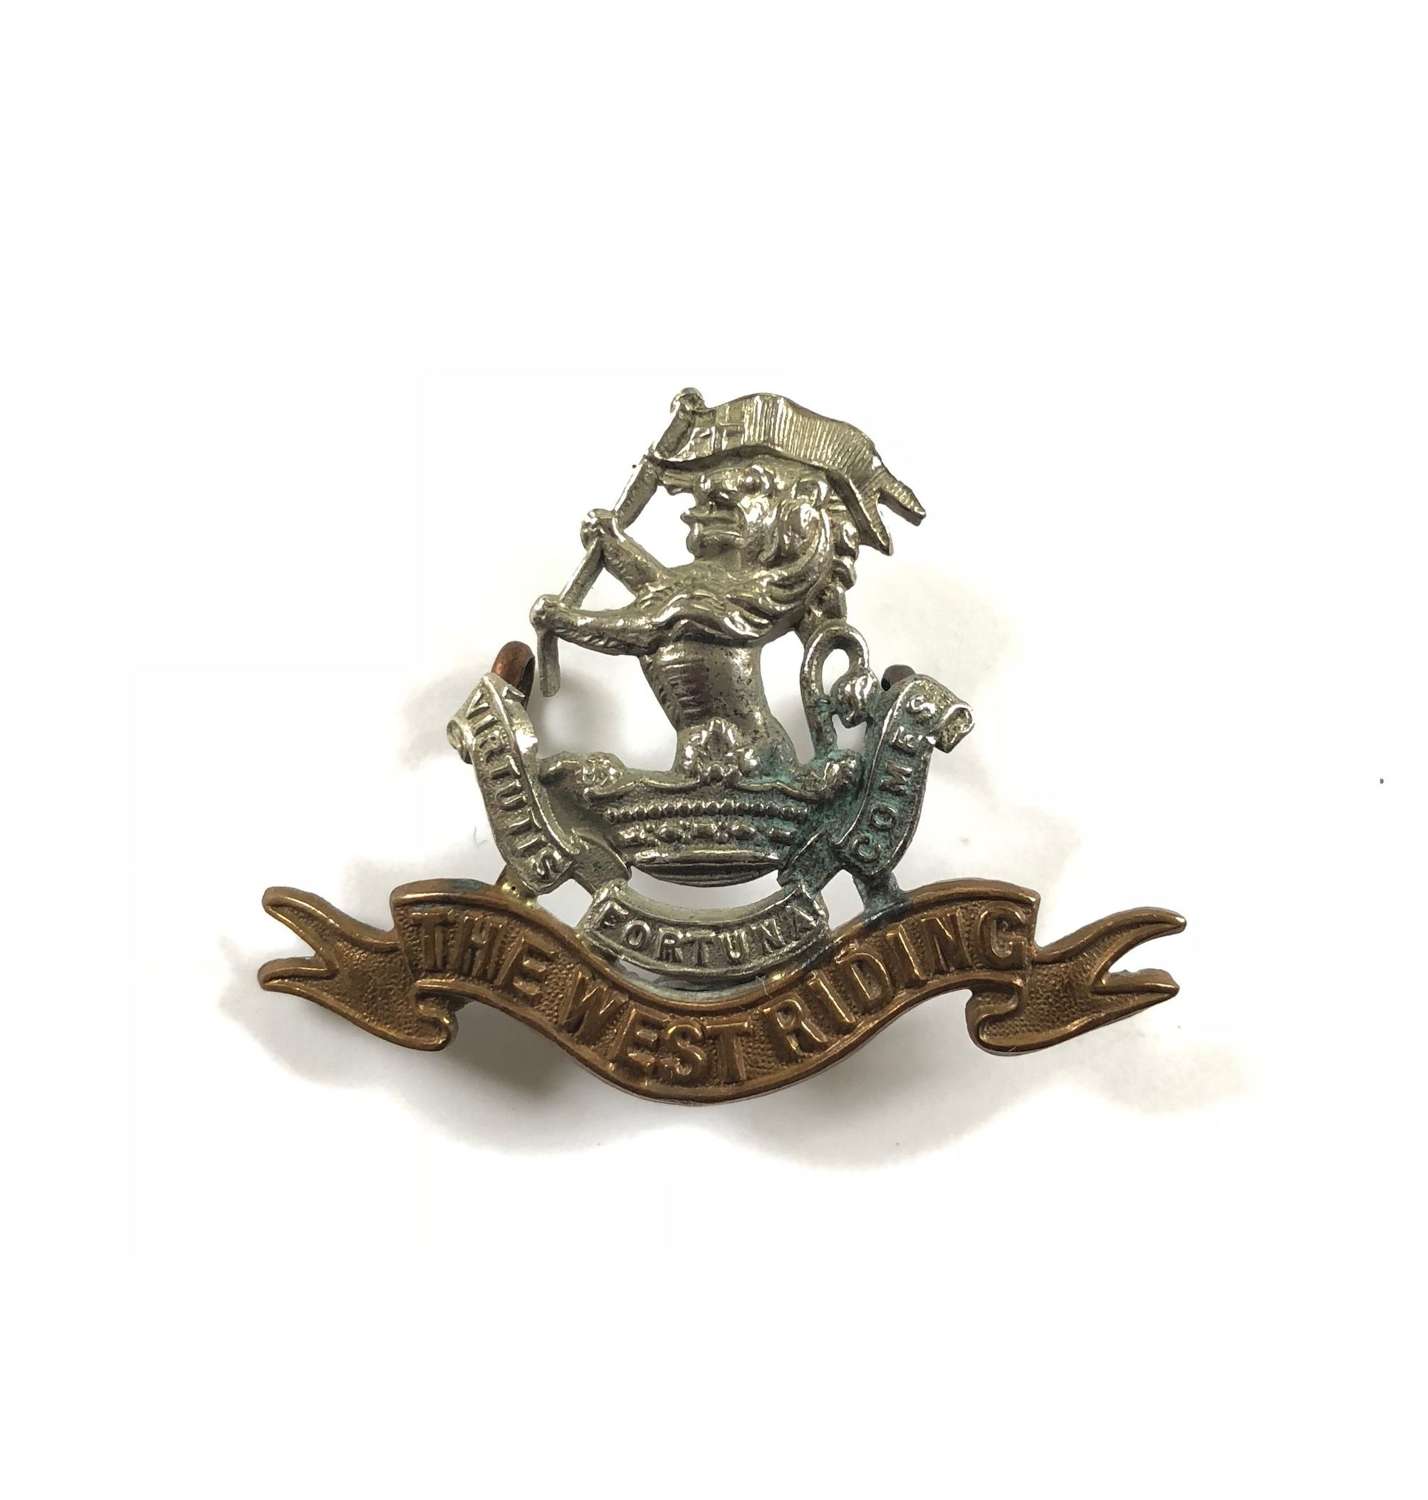 West Riding Regiment Edwardian Pre WW1 Cap Badge.